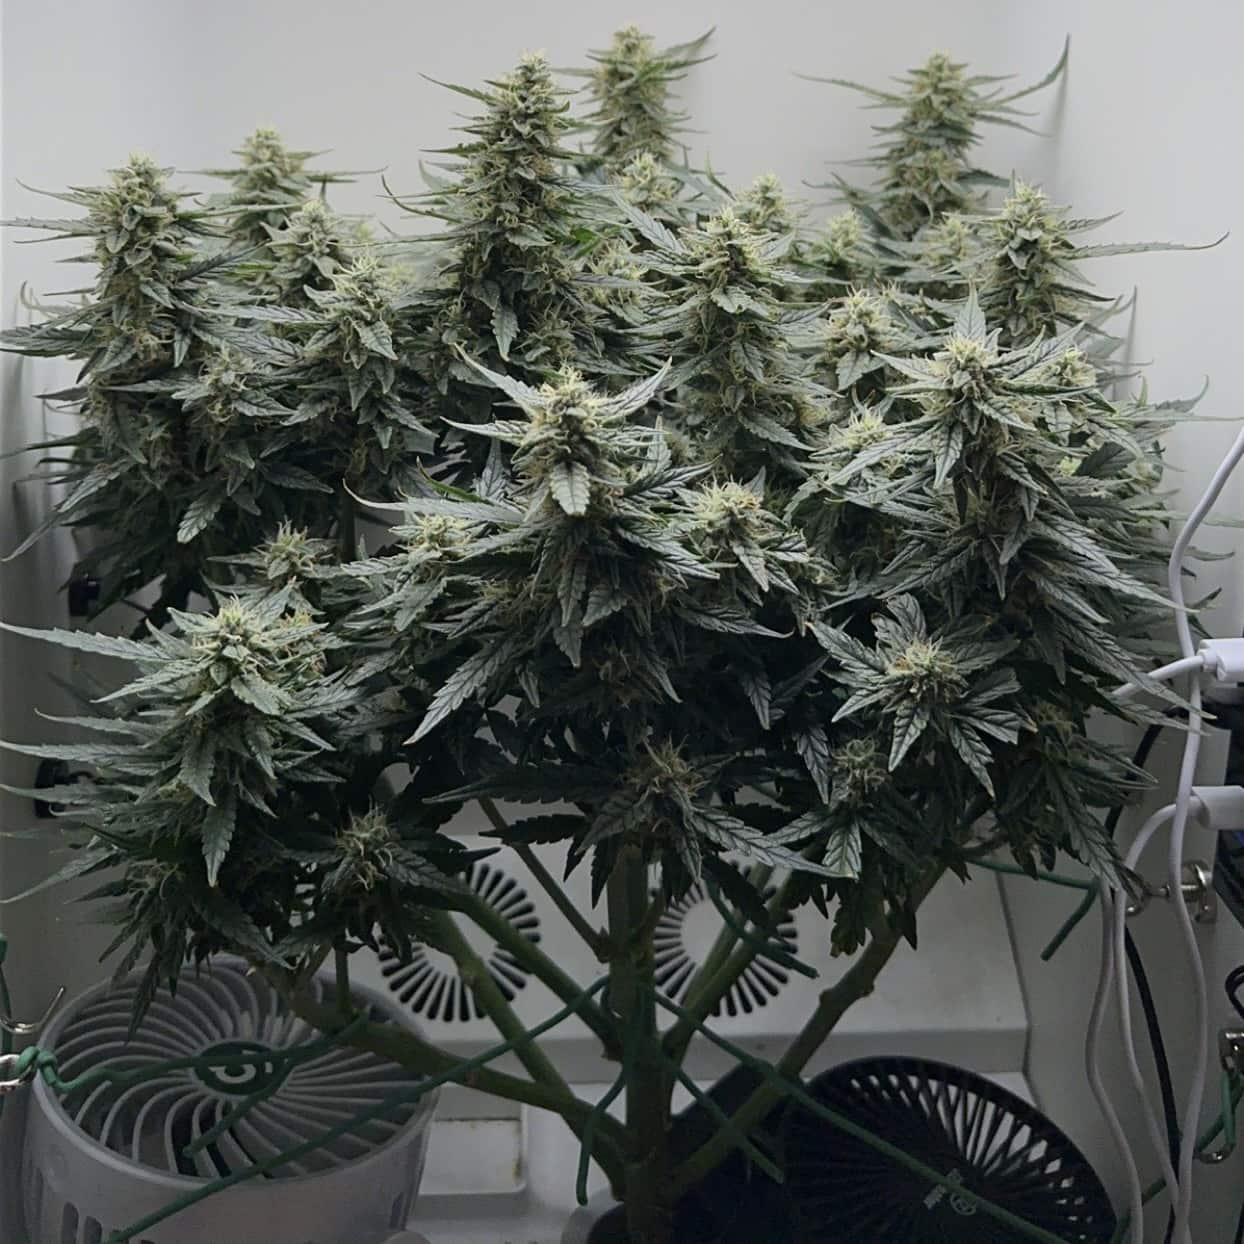 mid marijuana blooming stage